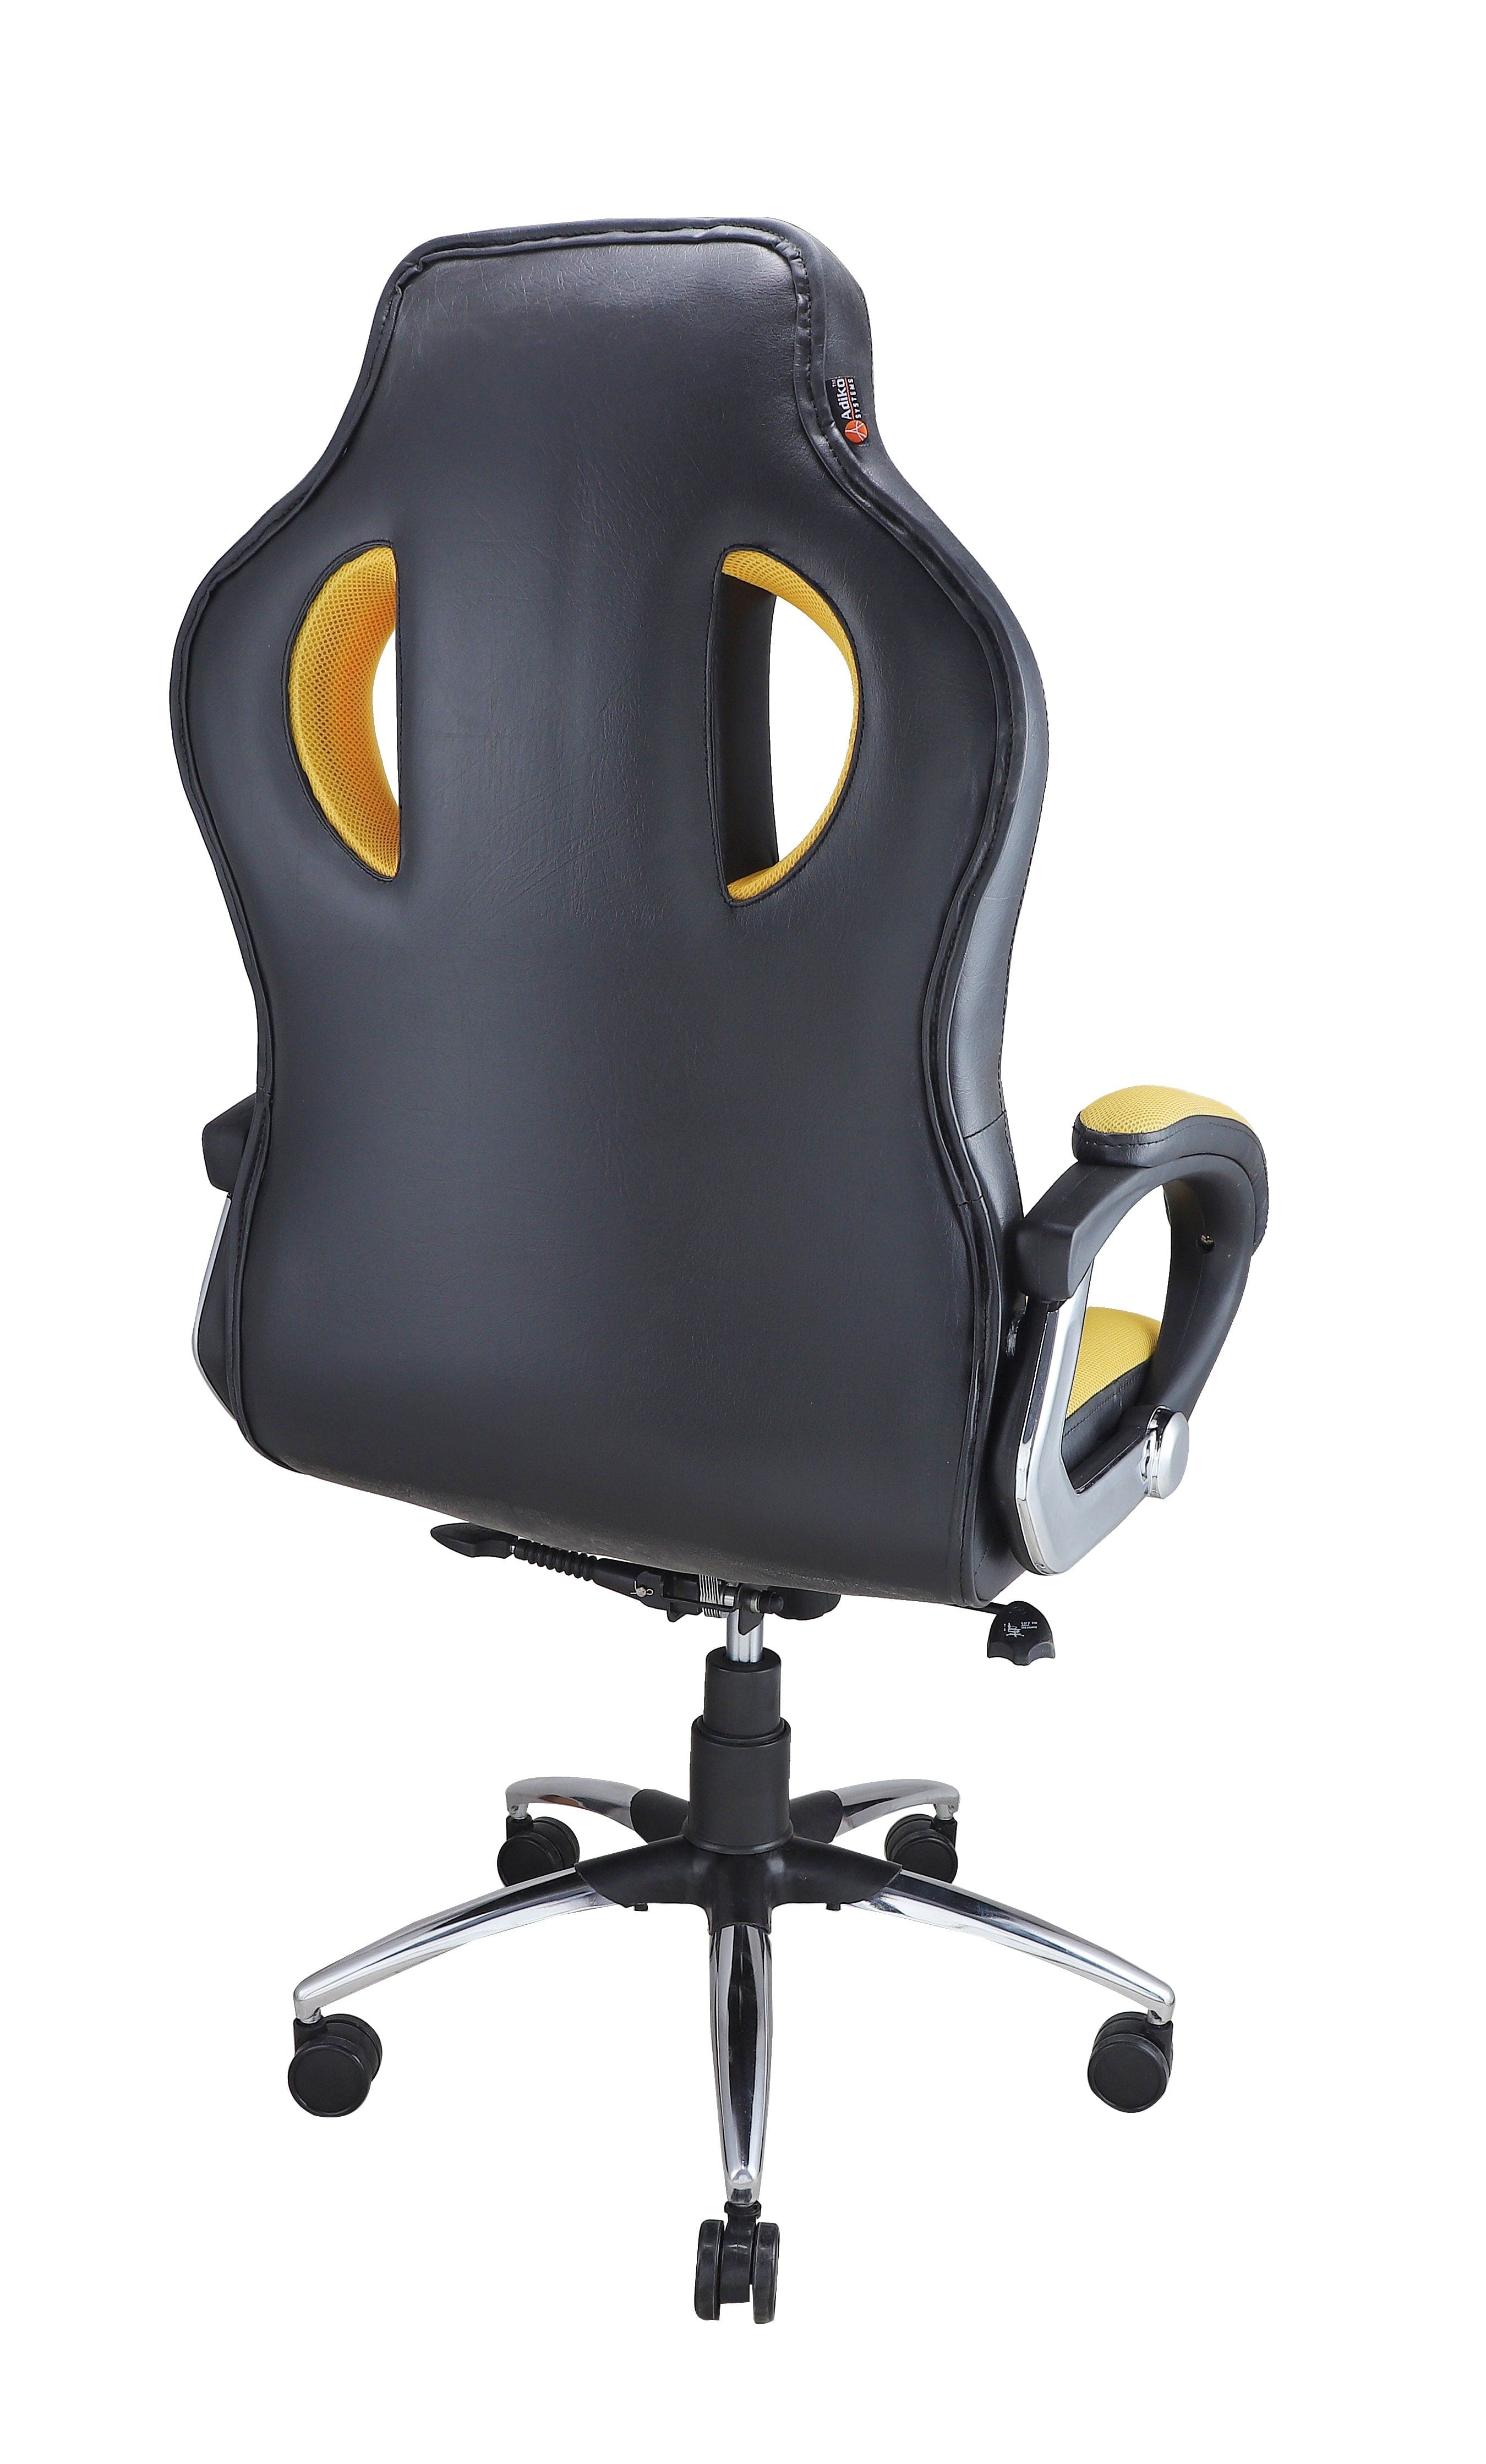 Adiko Designer Gaming Chair in Yellow